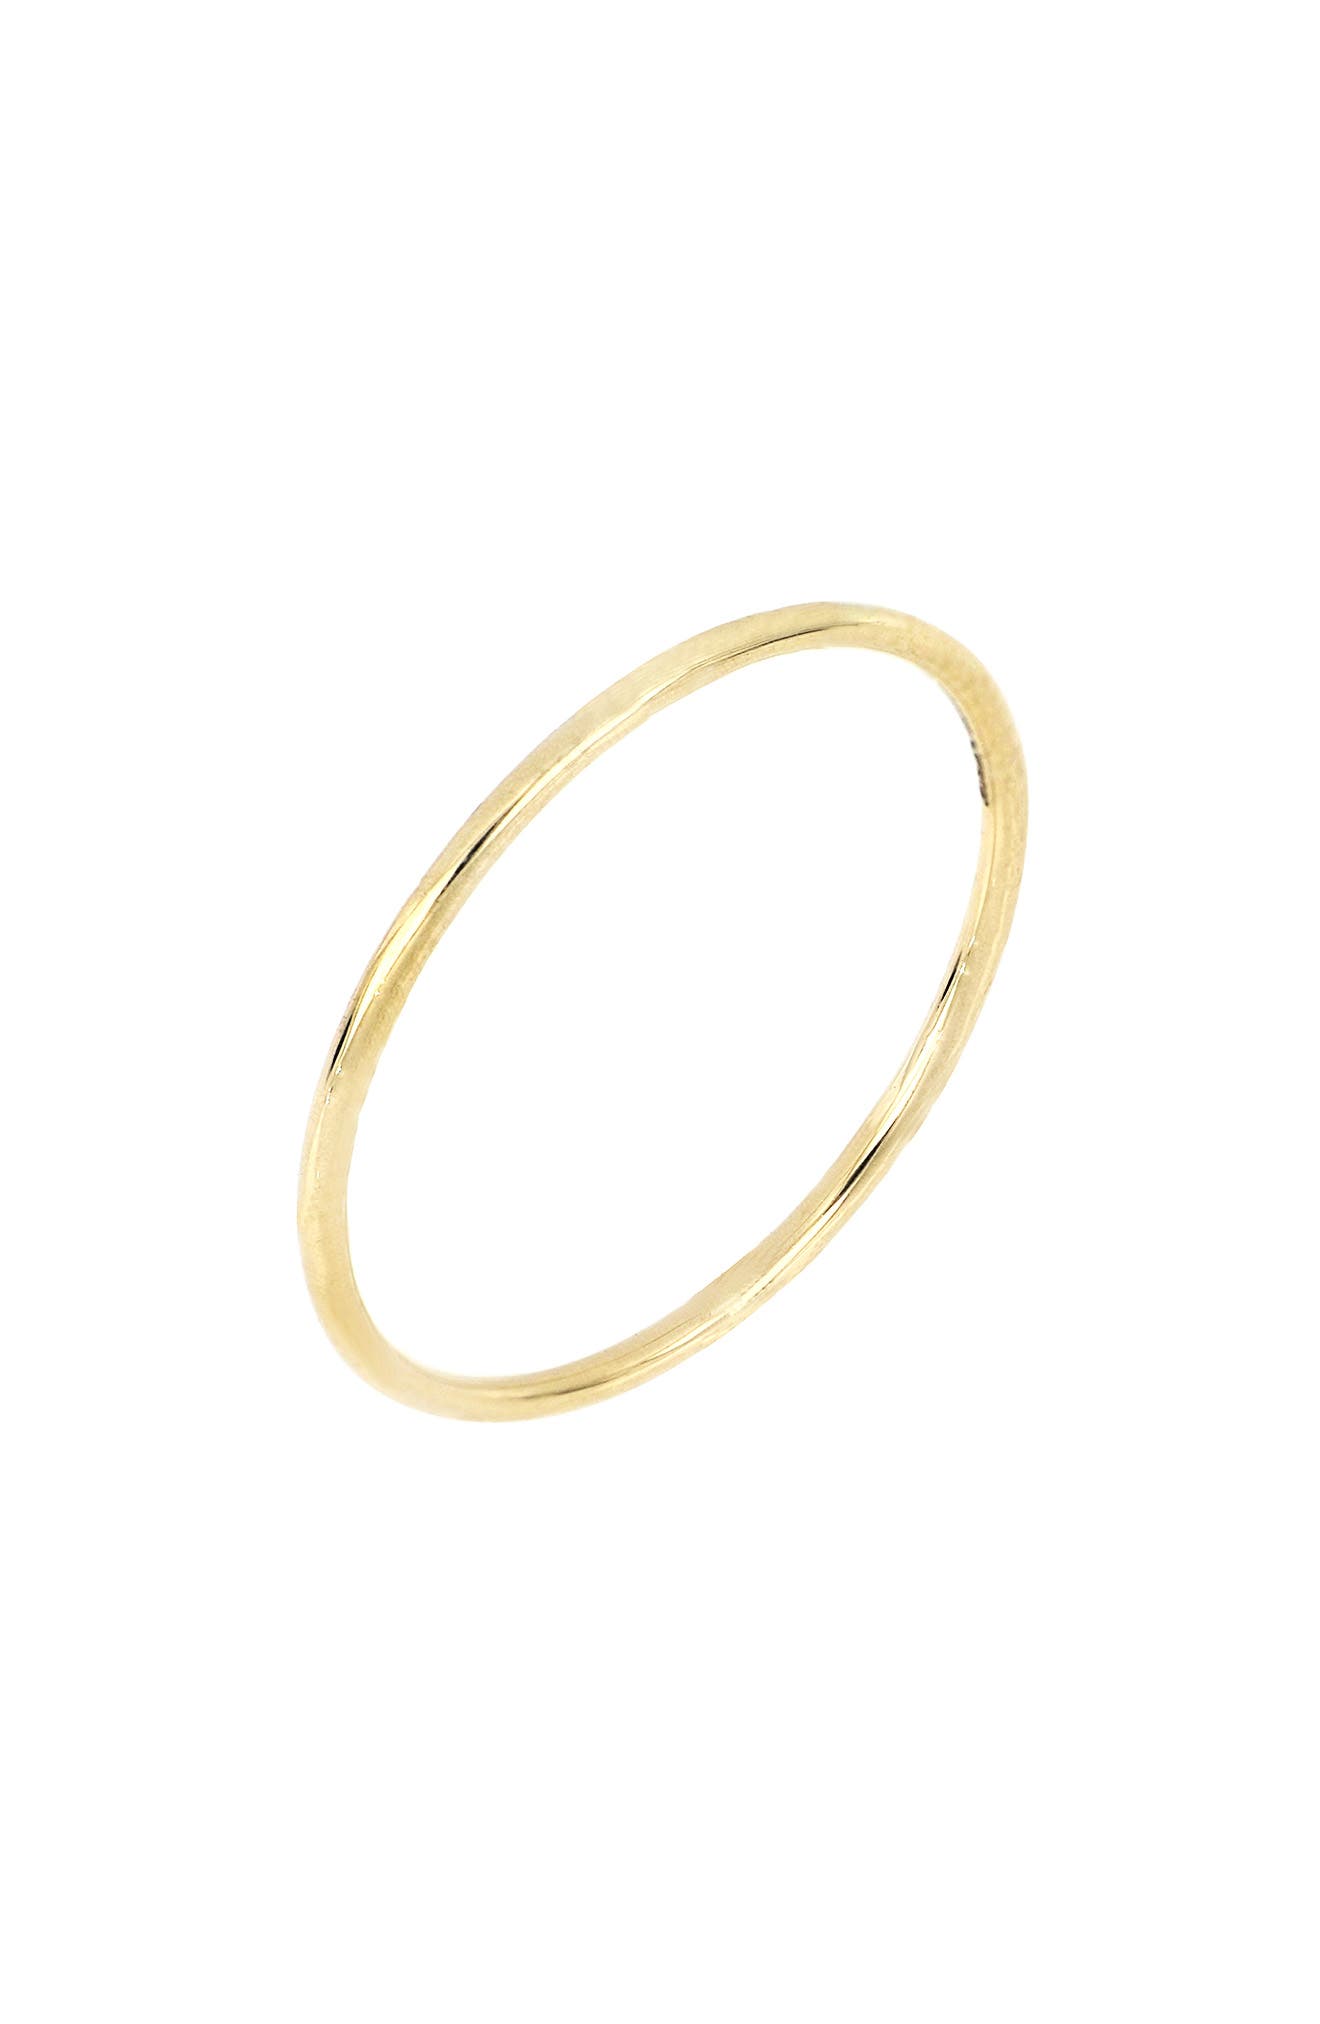 Gold Rings For Women Women's Gold Ring Hammered Gold Ring Statement Ring Oval Hammered Ring Simple Gold Ring Rings For Women